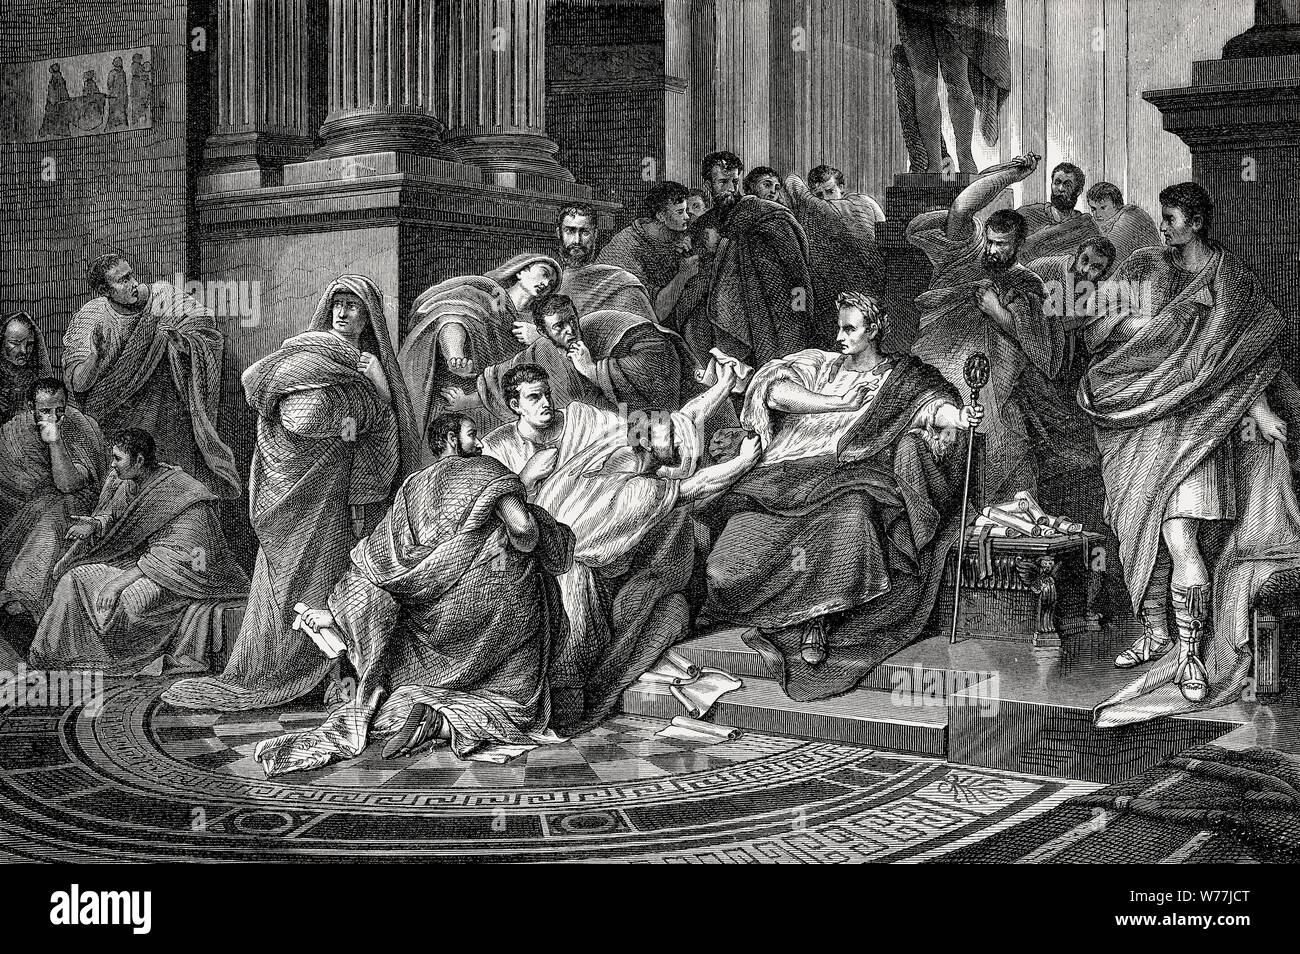 La mort de Caius Julius Caesar, 100 - 44 avant J.-C., homme d'état Romain Banque D'Images